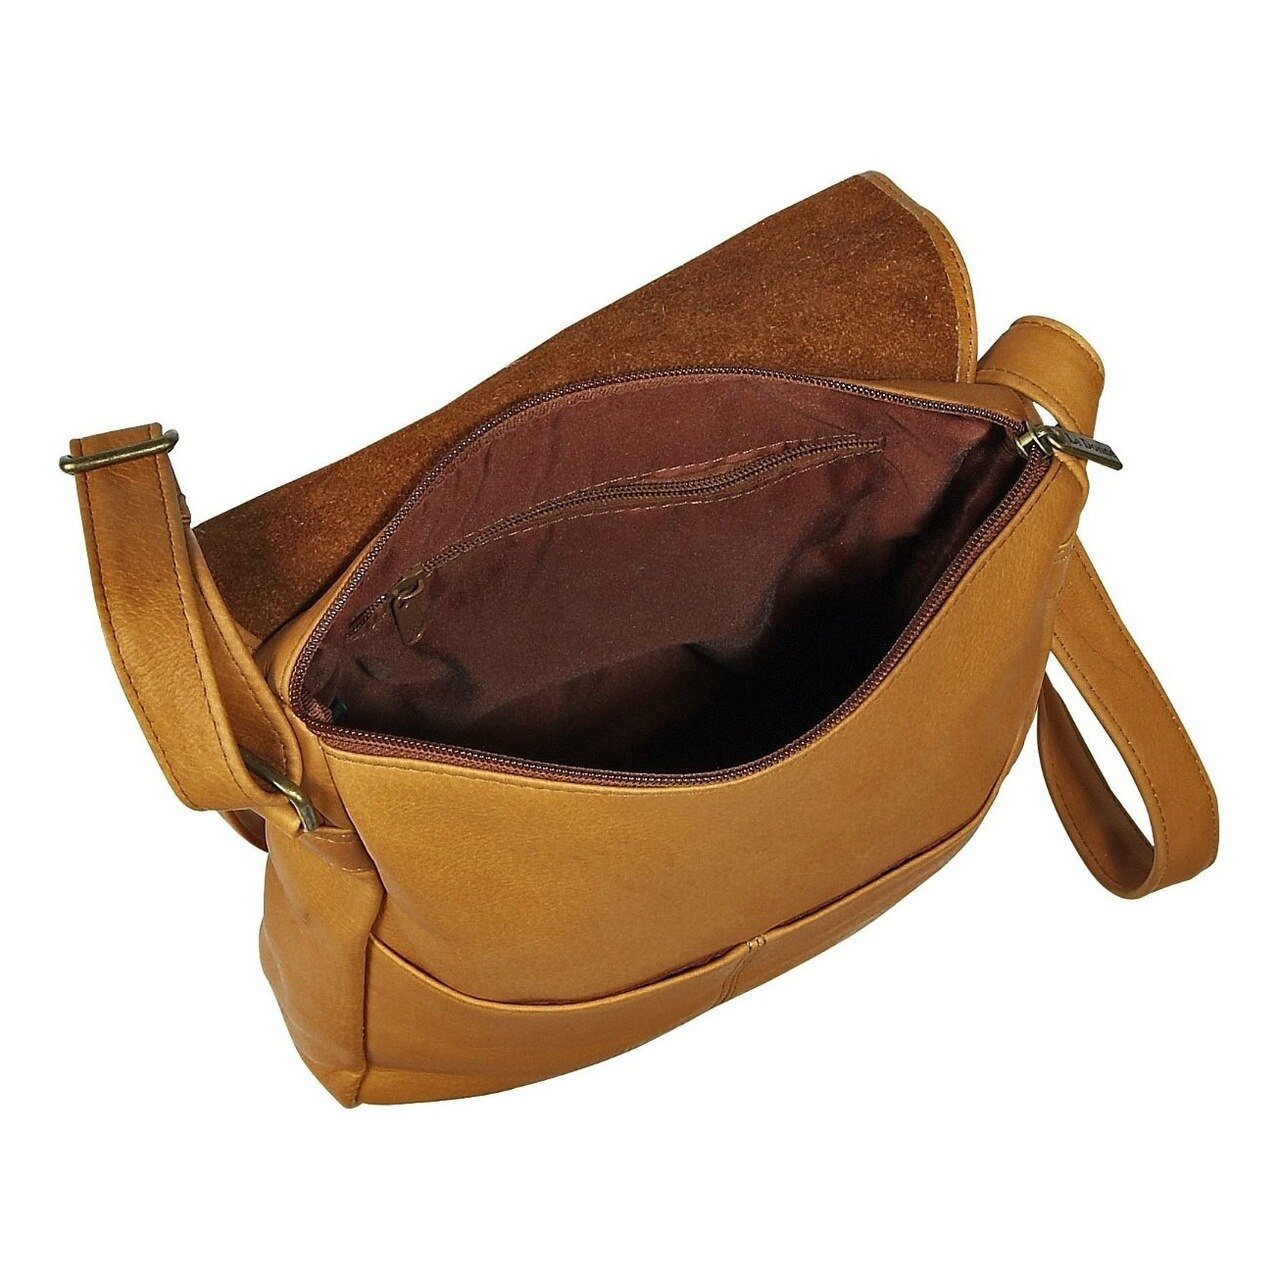 Le Donne Leather Vertical Flap Over Shoulder Bag H-149R - image 2 of 5